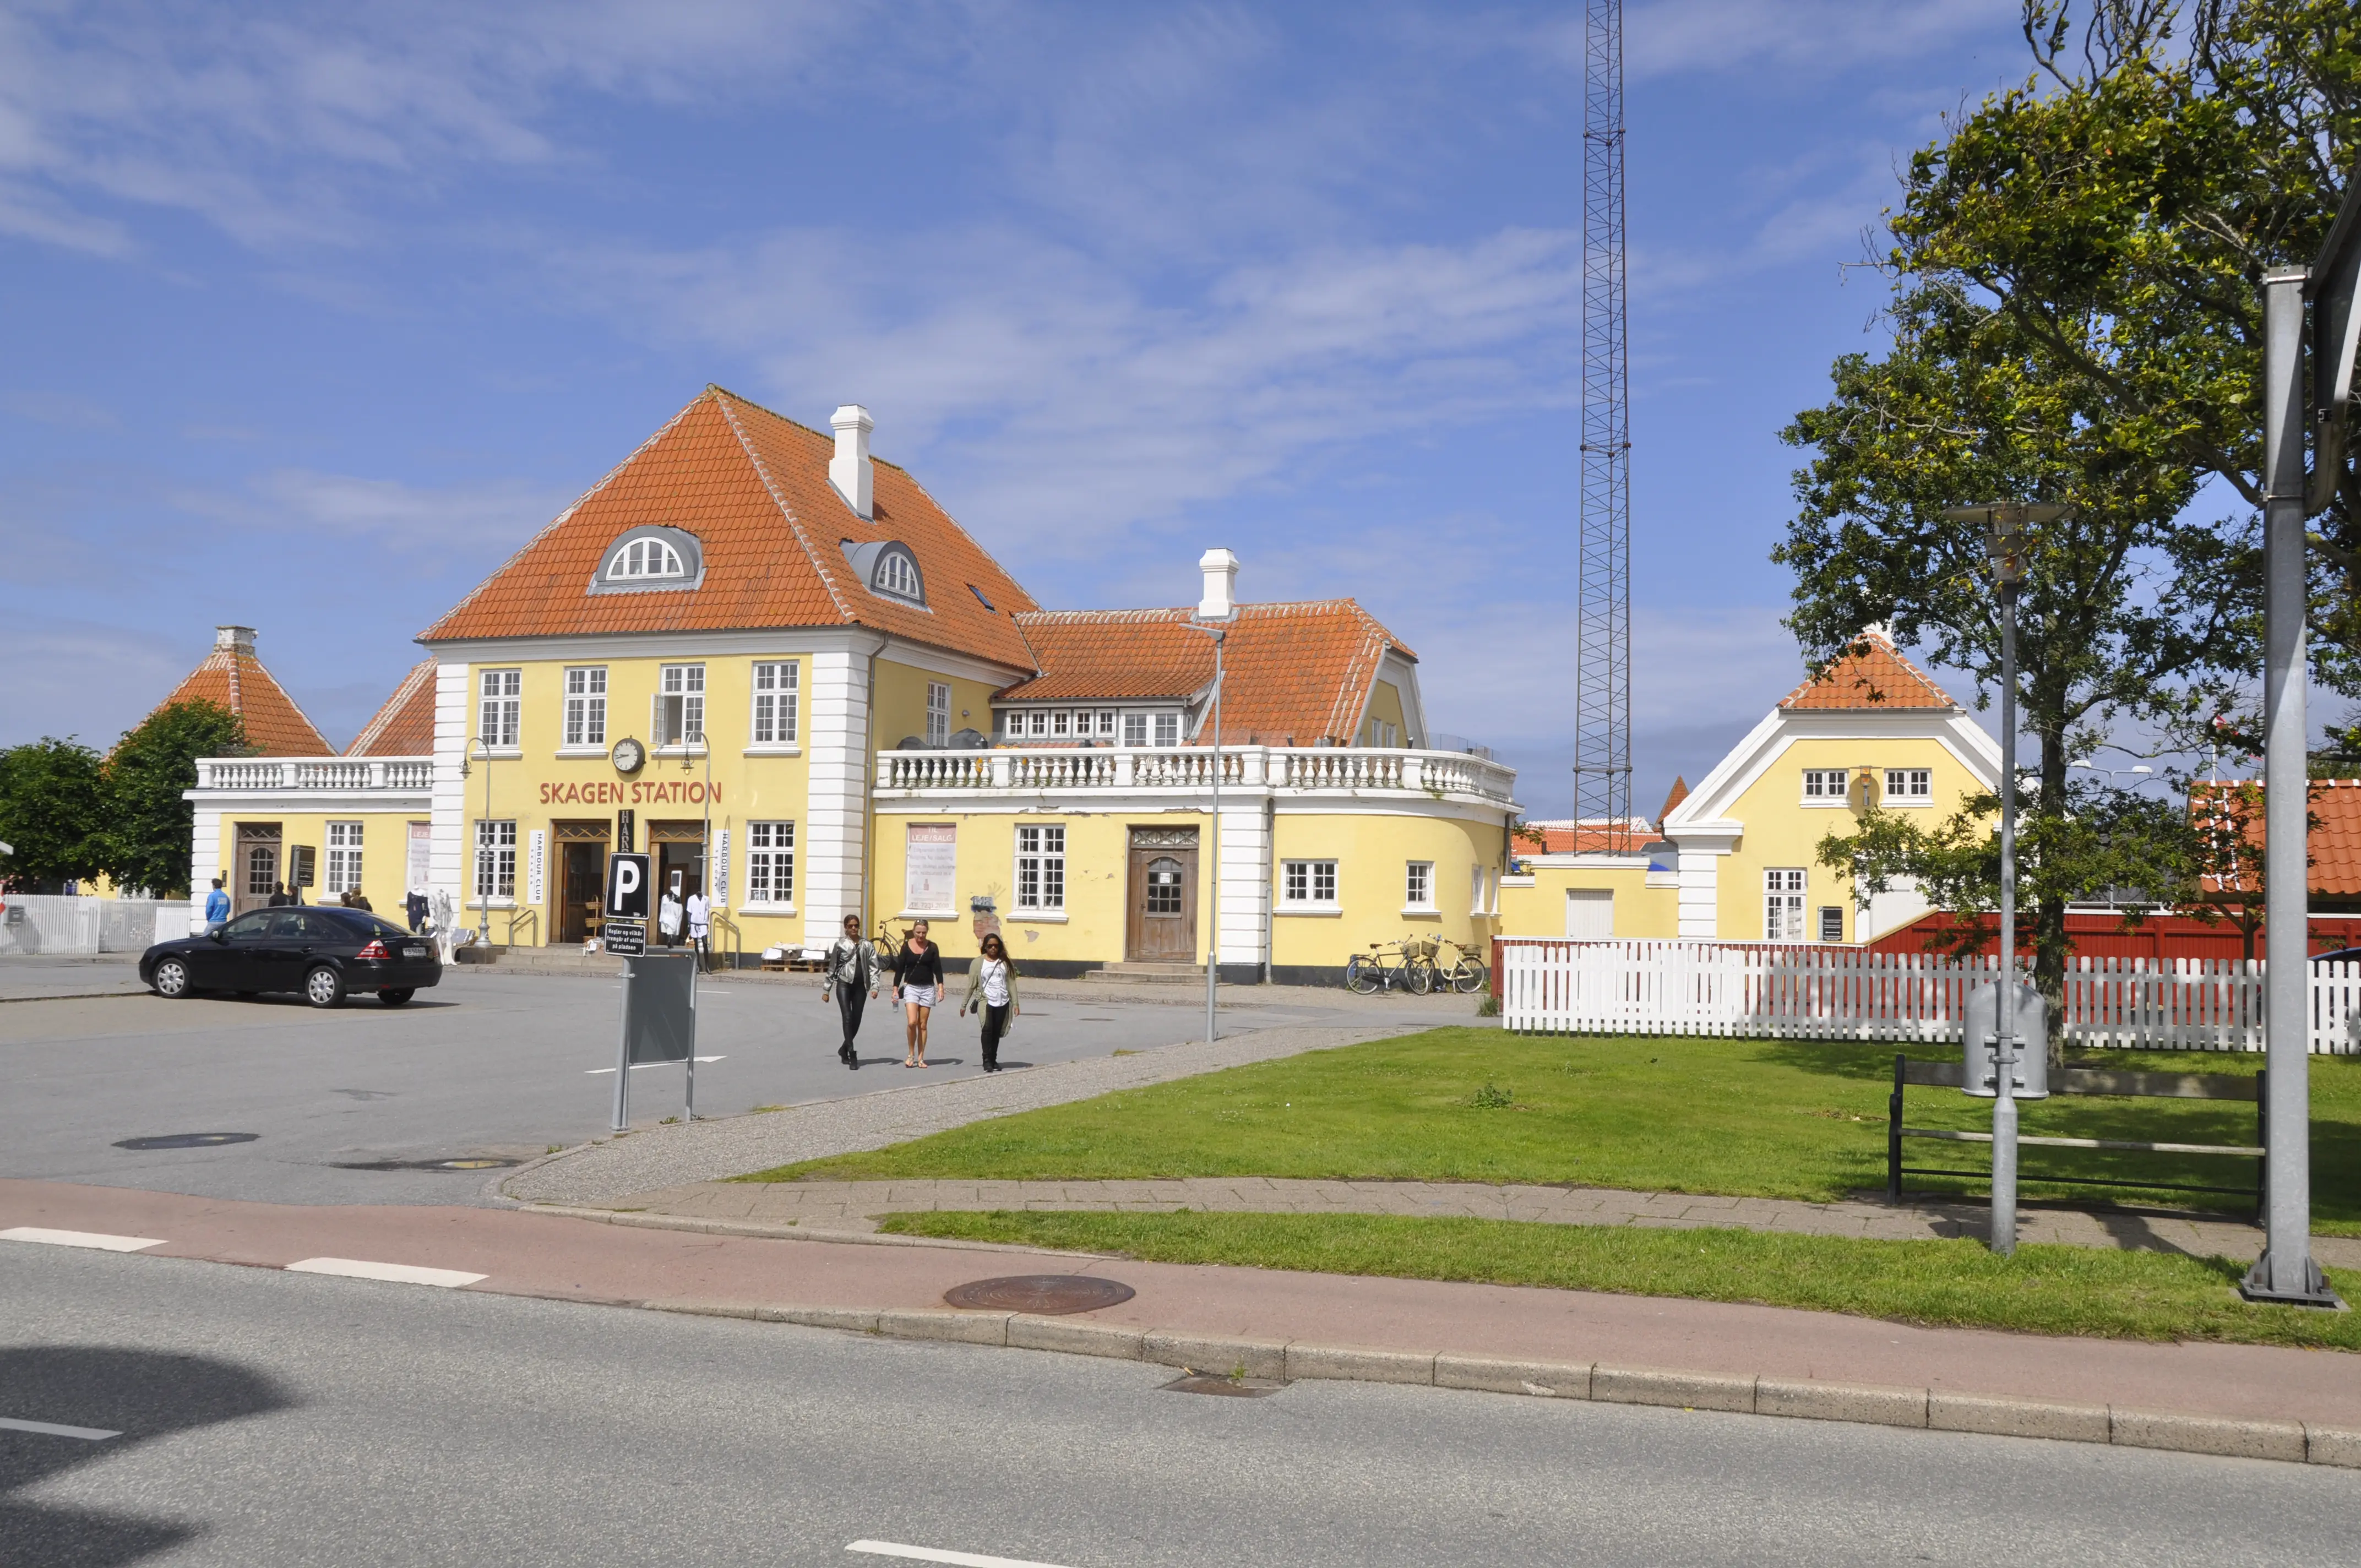 Billede af Skagen Station.